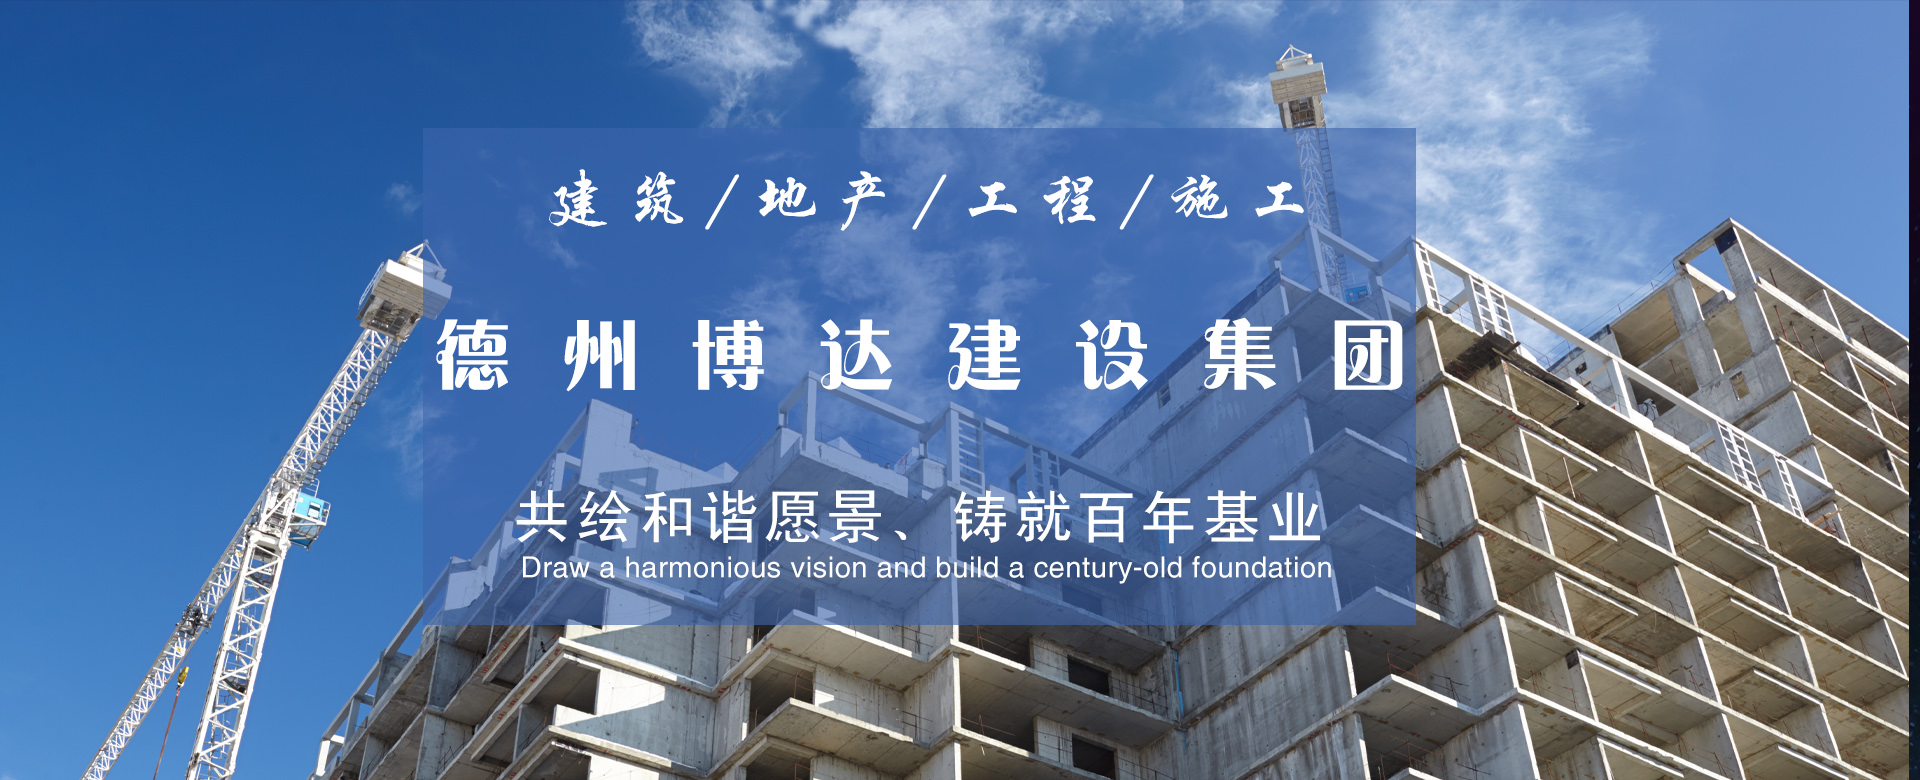 北京建筑工程公司介绍建筑工程定额的概述。